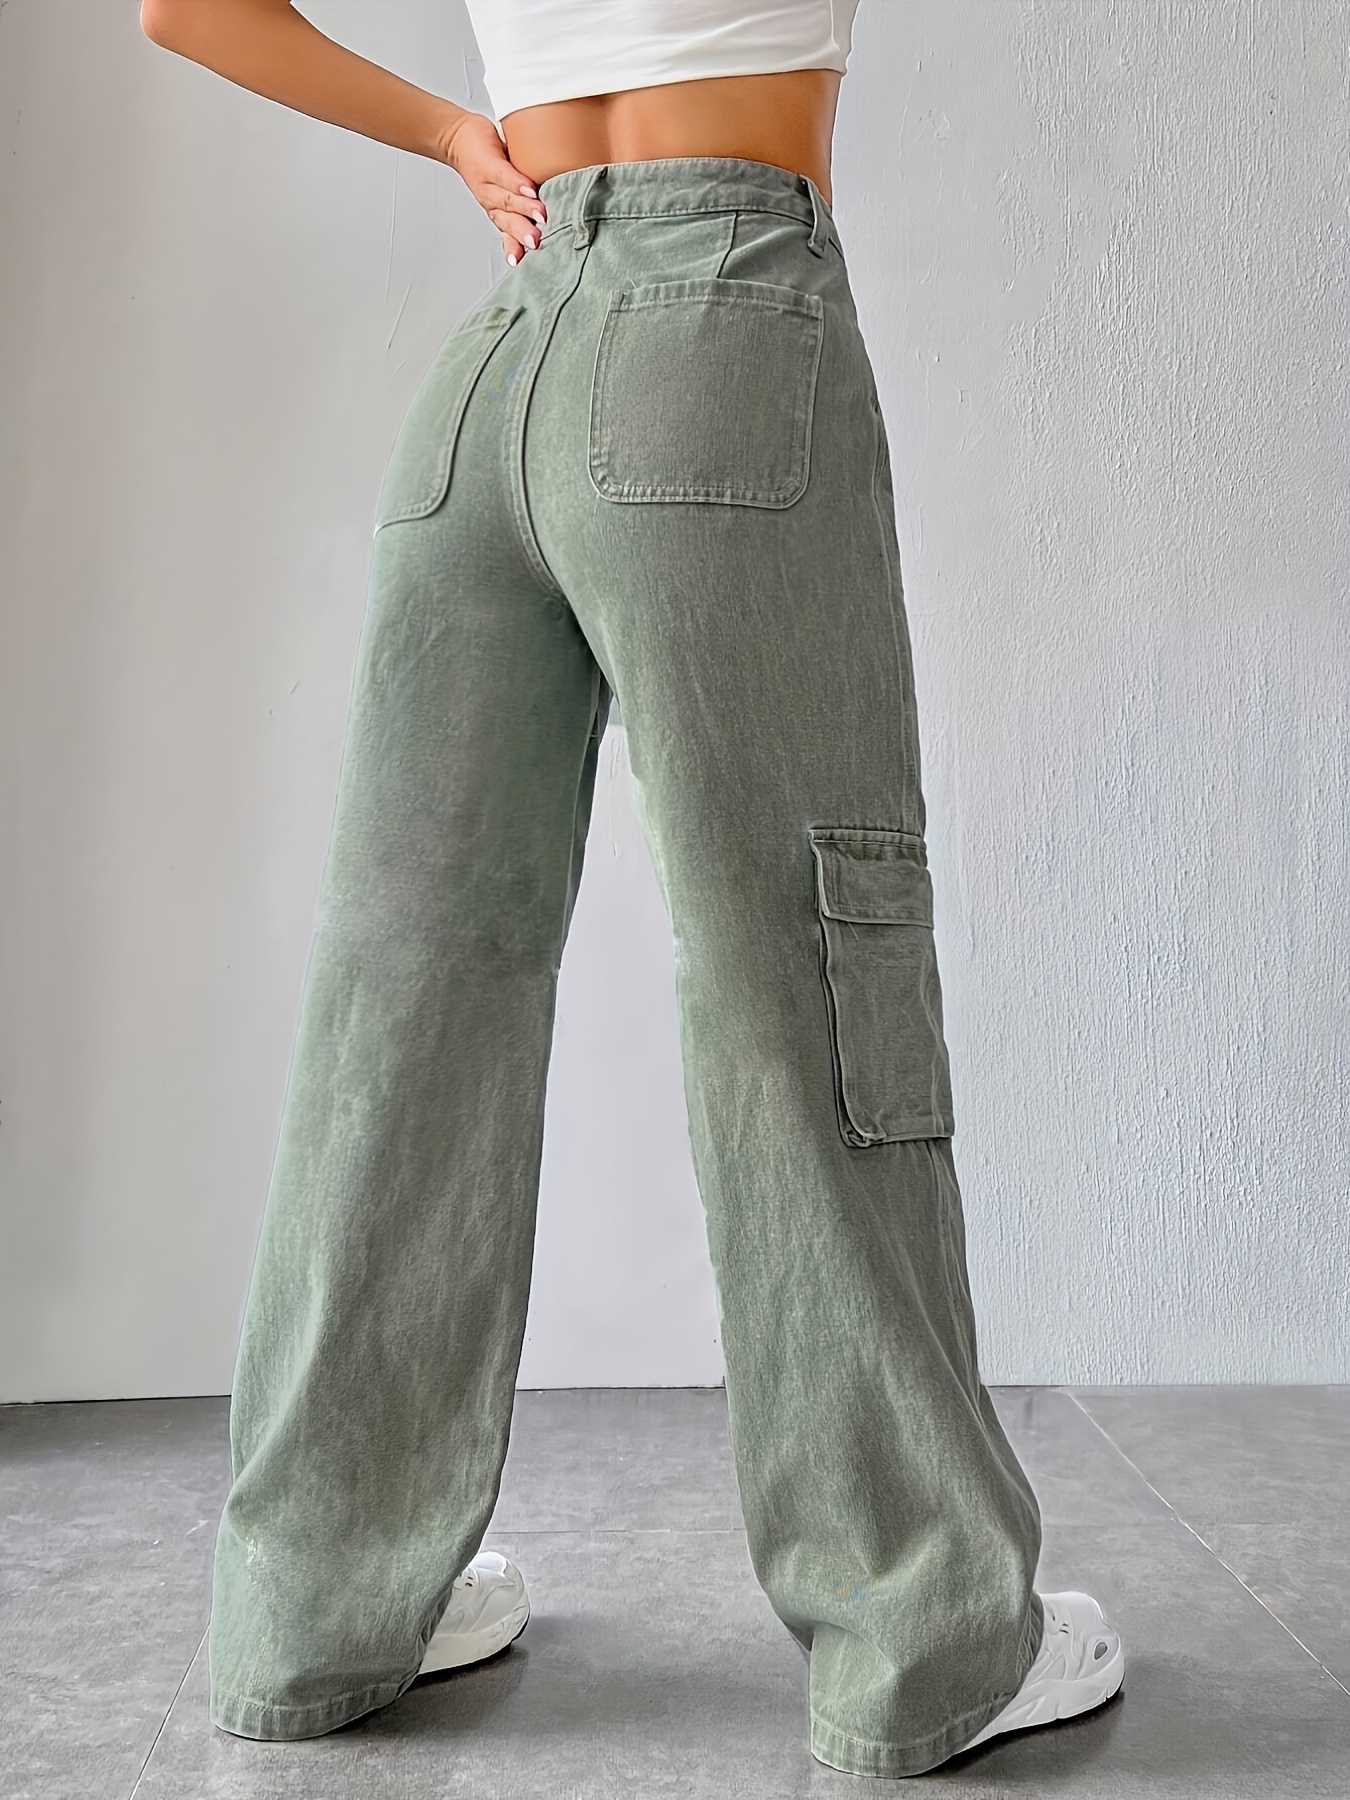 Pantalones Cargo Casuales Con Bolsillos Con Solapa, Jeans Rectos Estilo Y2K  Y Kpop De Cintura Alta Holgados, Jeans Y Ropa De Mezclilla Para Mujer